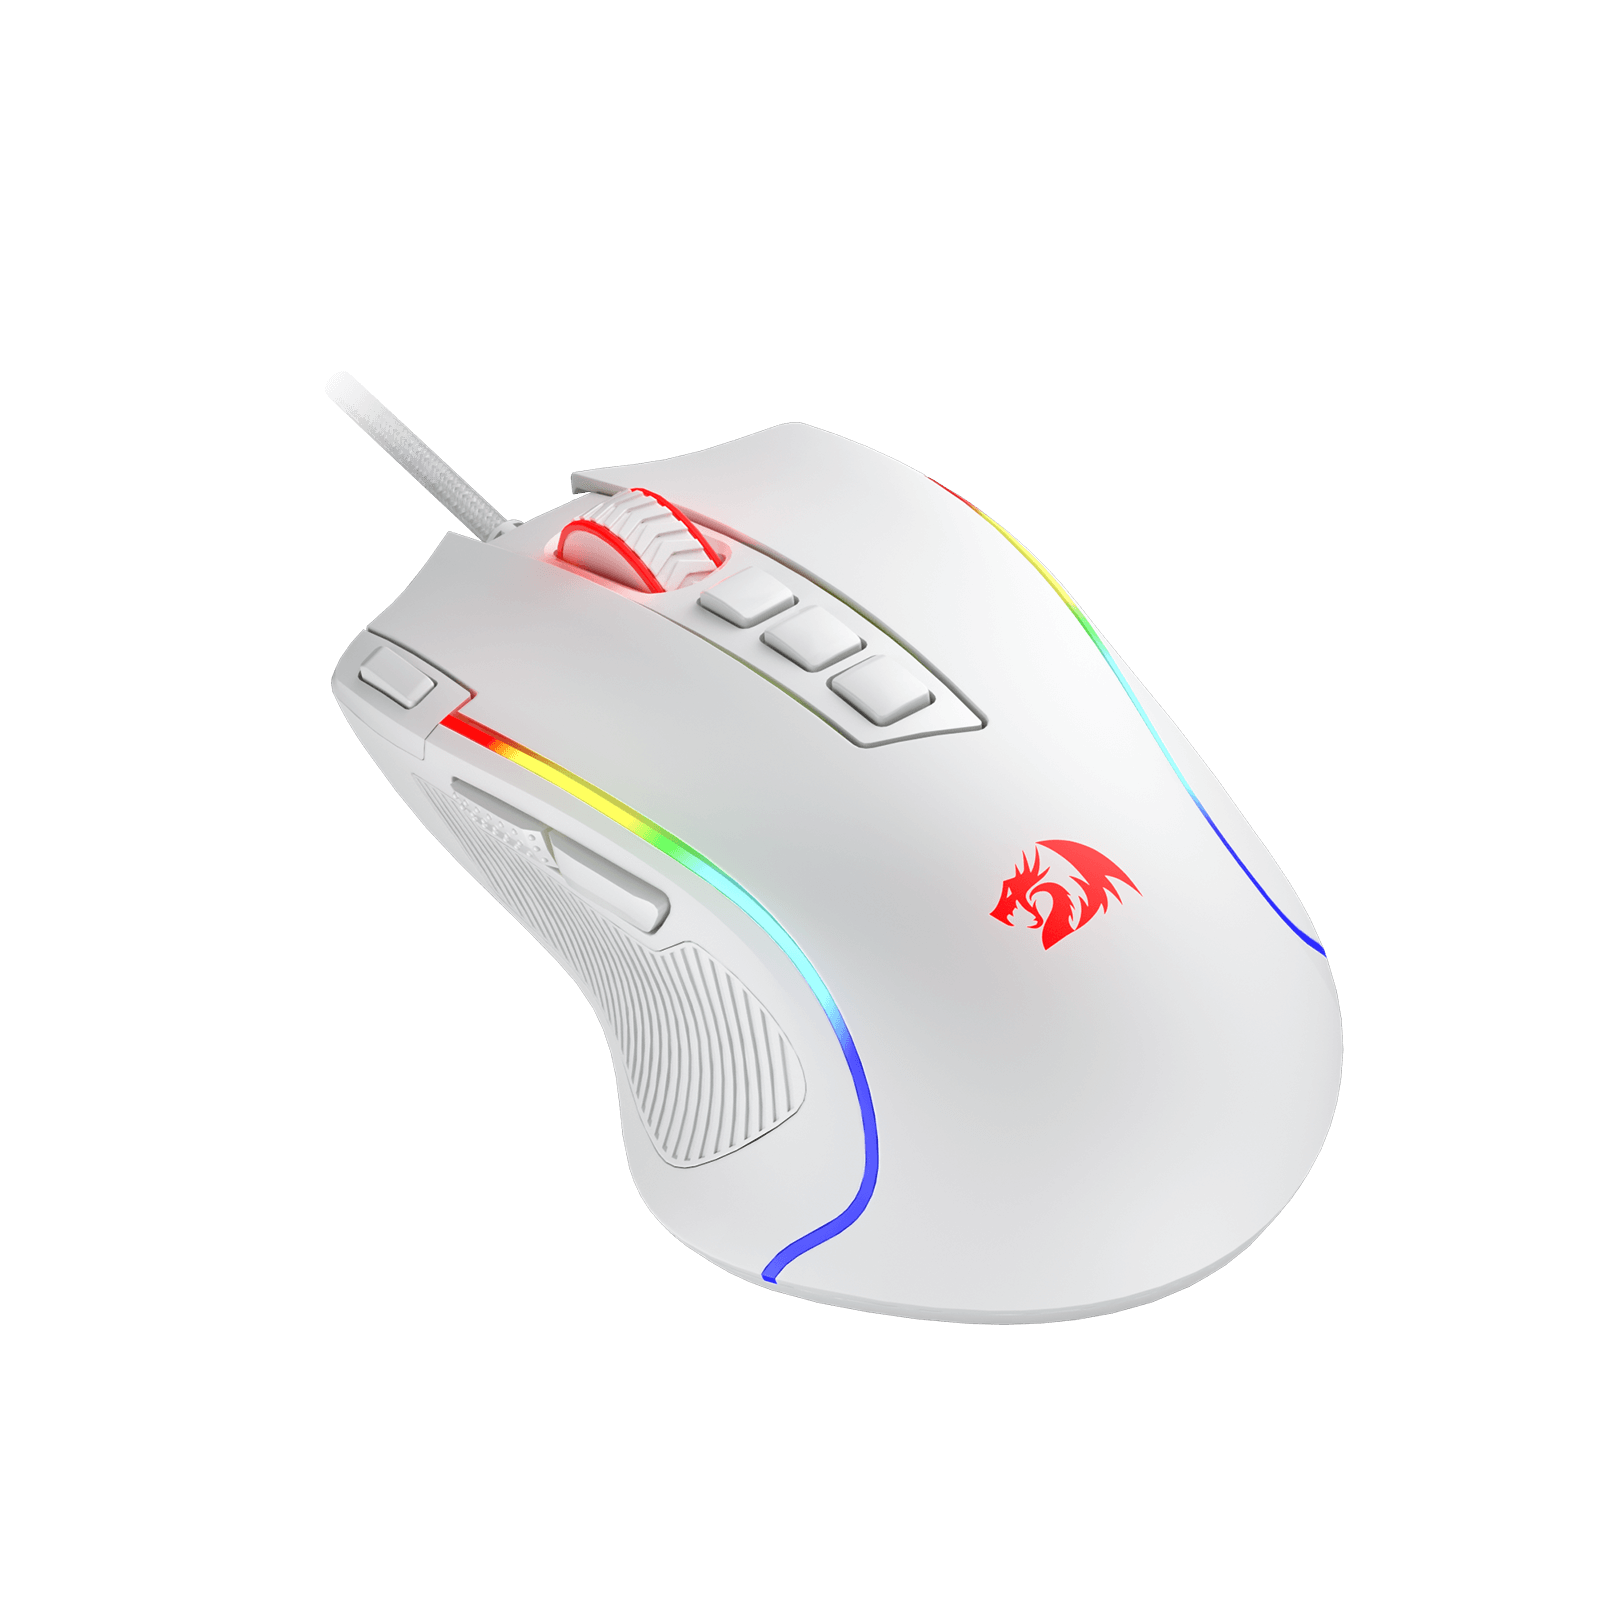 Redragon M612 Predator white Gaming Mouse